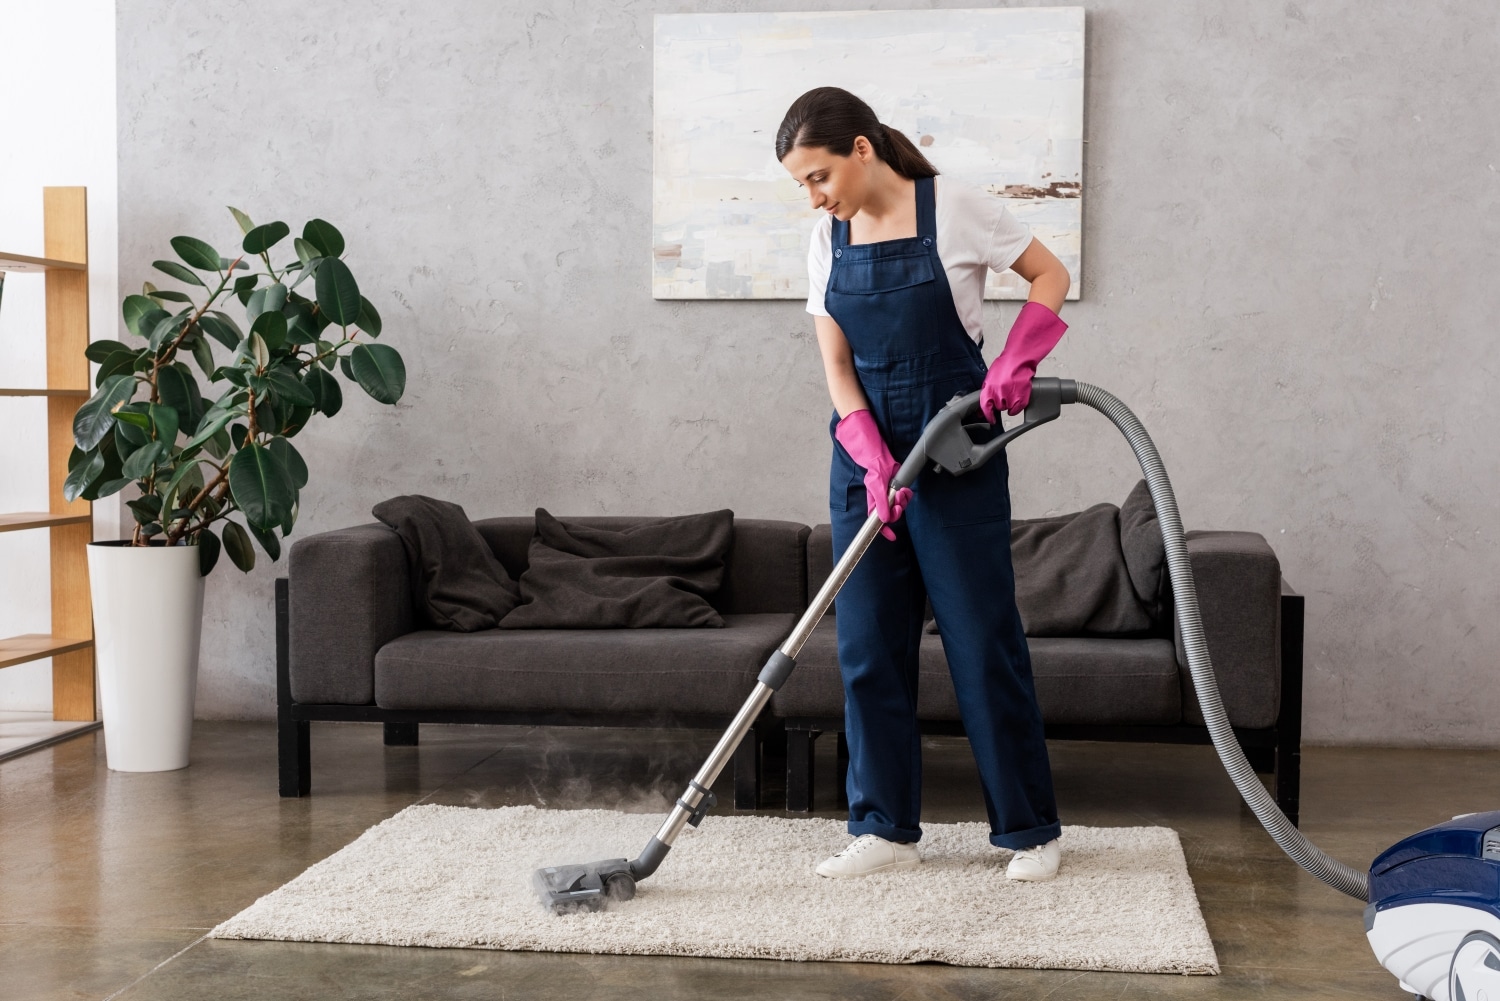 Lead Carpet Cleaner Job Description Template